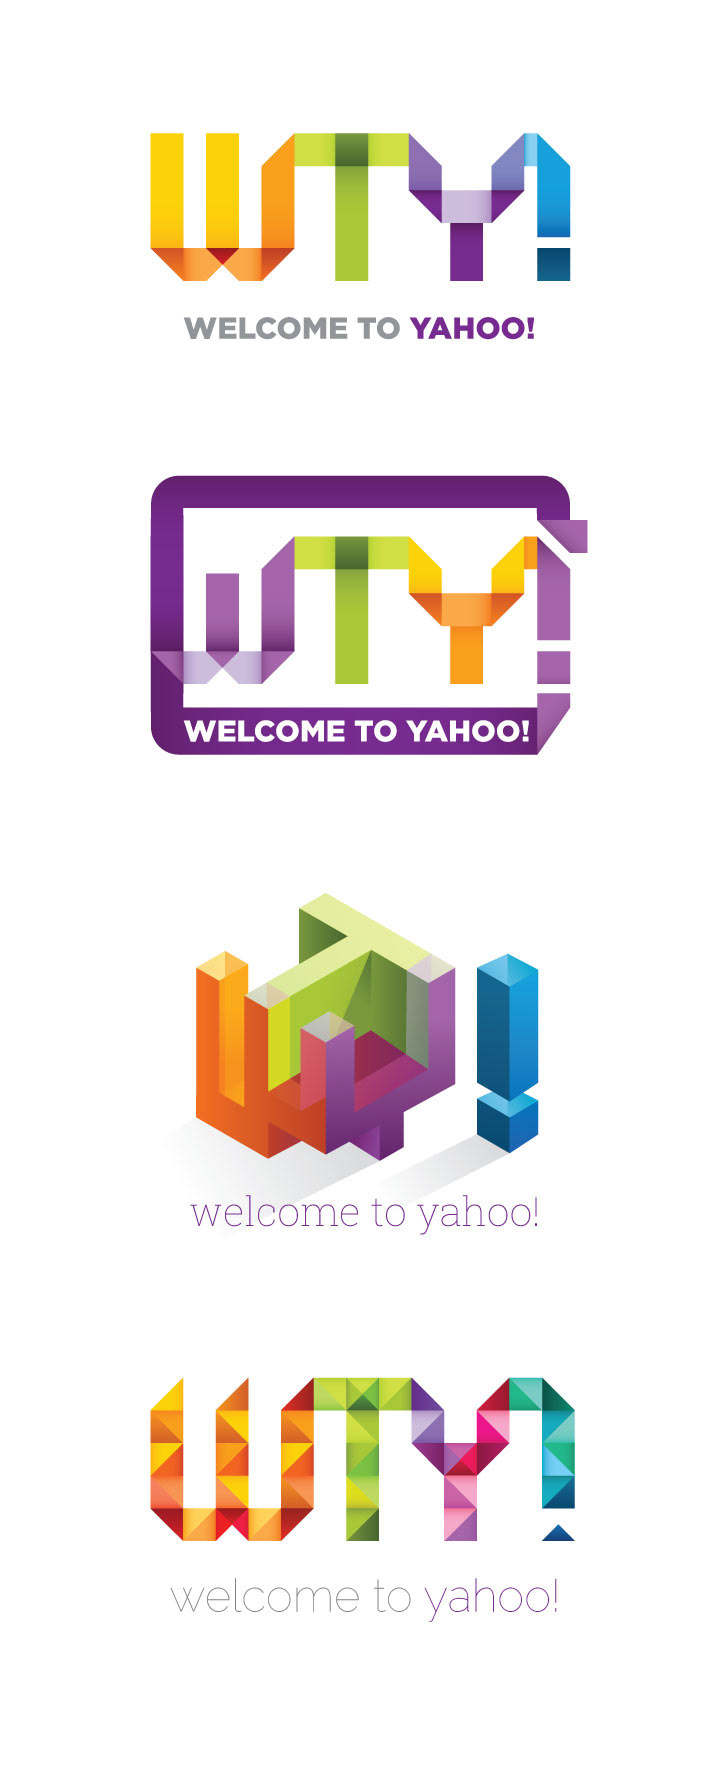 Welcome to Yahoo!